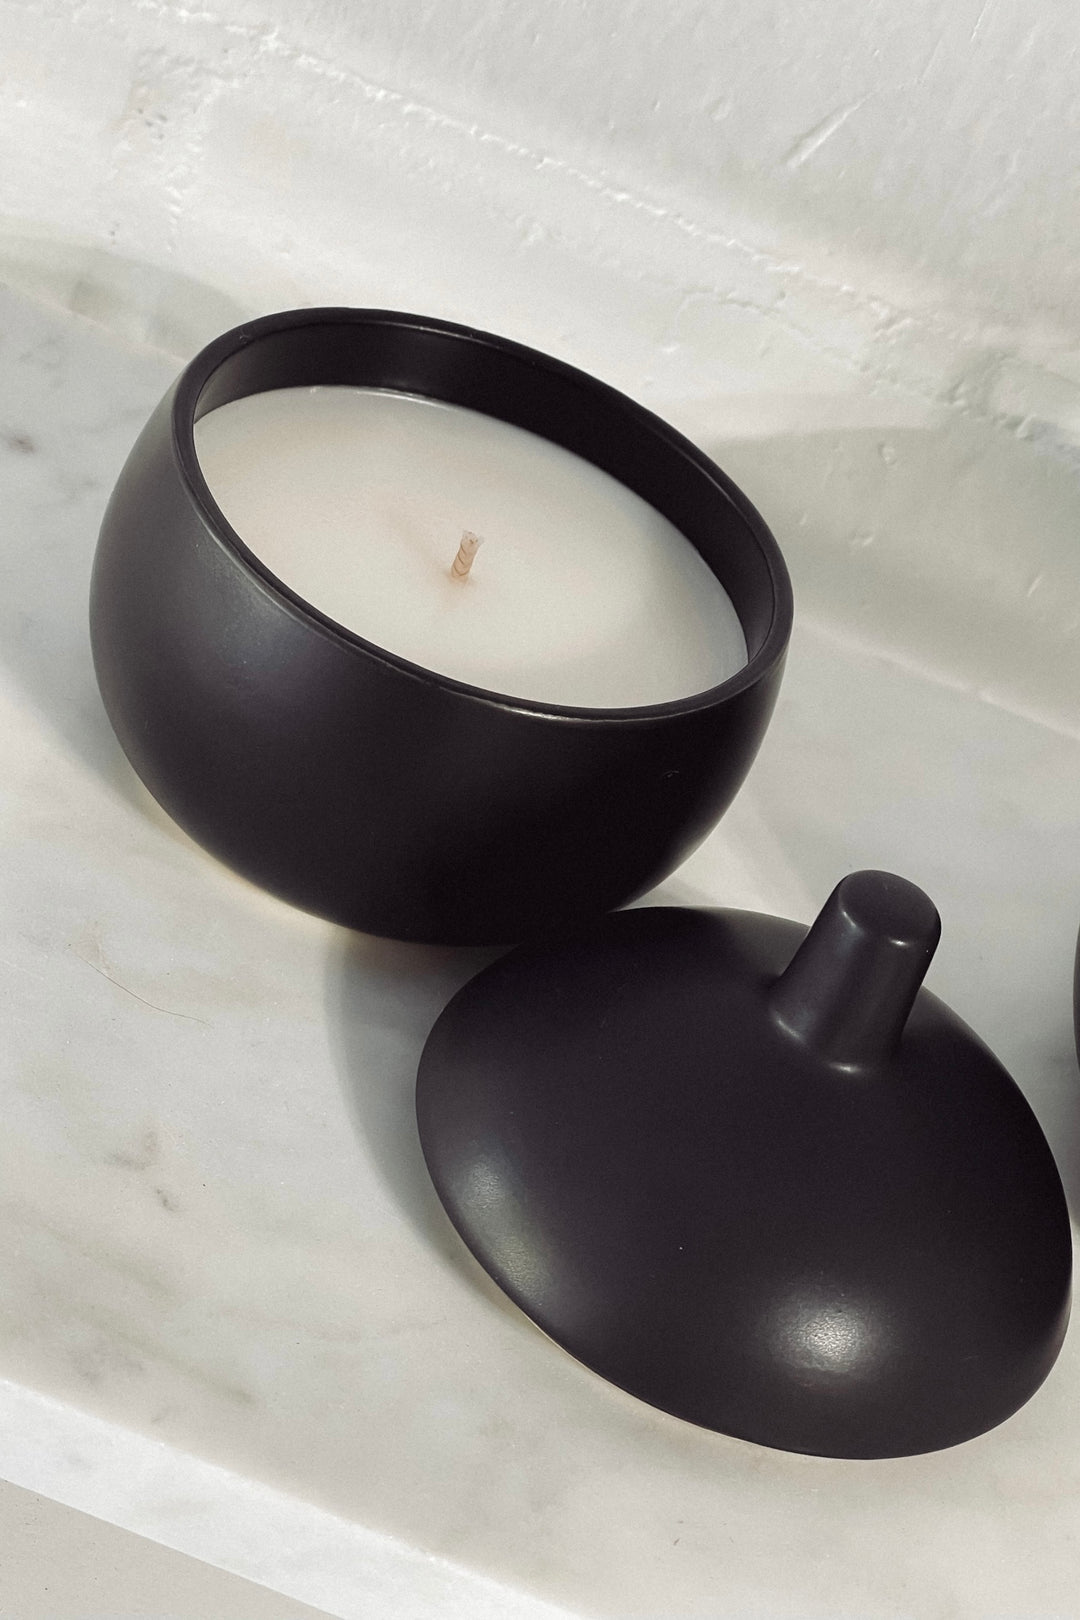 Small + Big Ceramic Pot Candle - Black